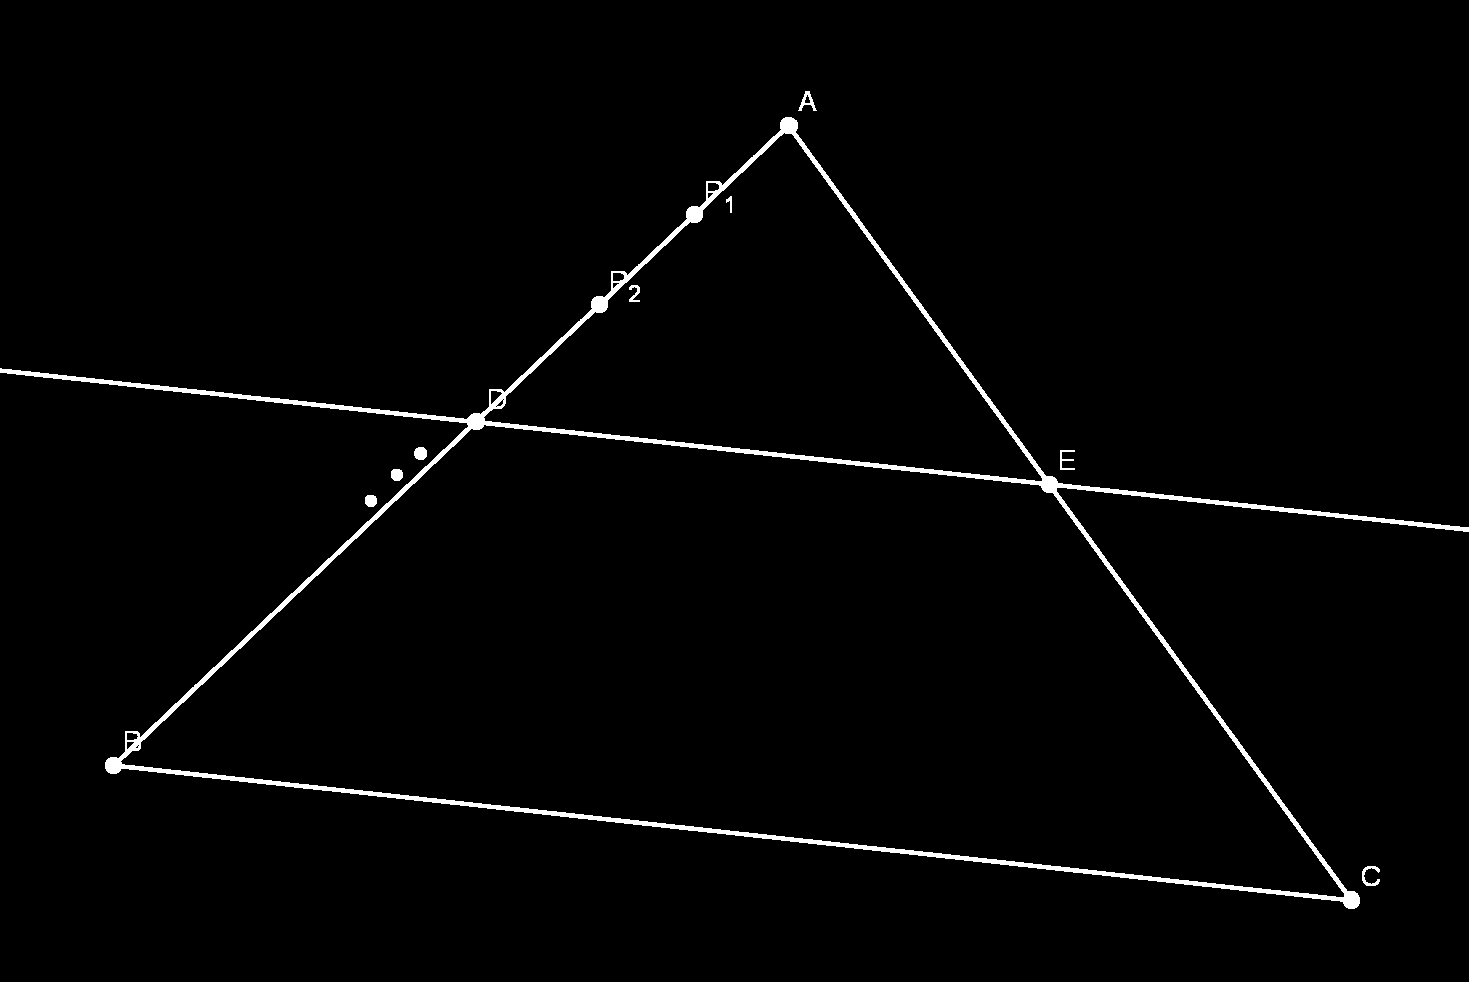 Geometria Euclidiana Plana Corolário 5.3. Suponha que k retas paralelas a 1,..., a k cortam duas retas m e n nos pontos A 1,..., A k e nos pontos B 1,..., B k, respectivamente.